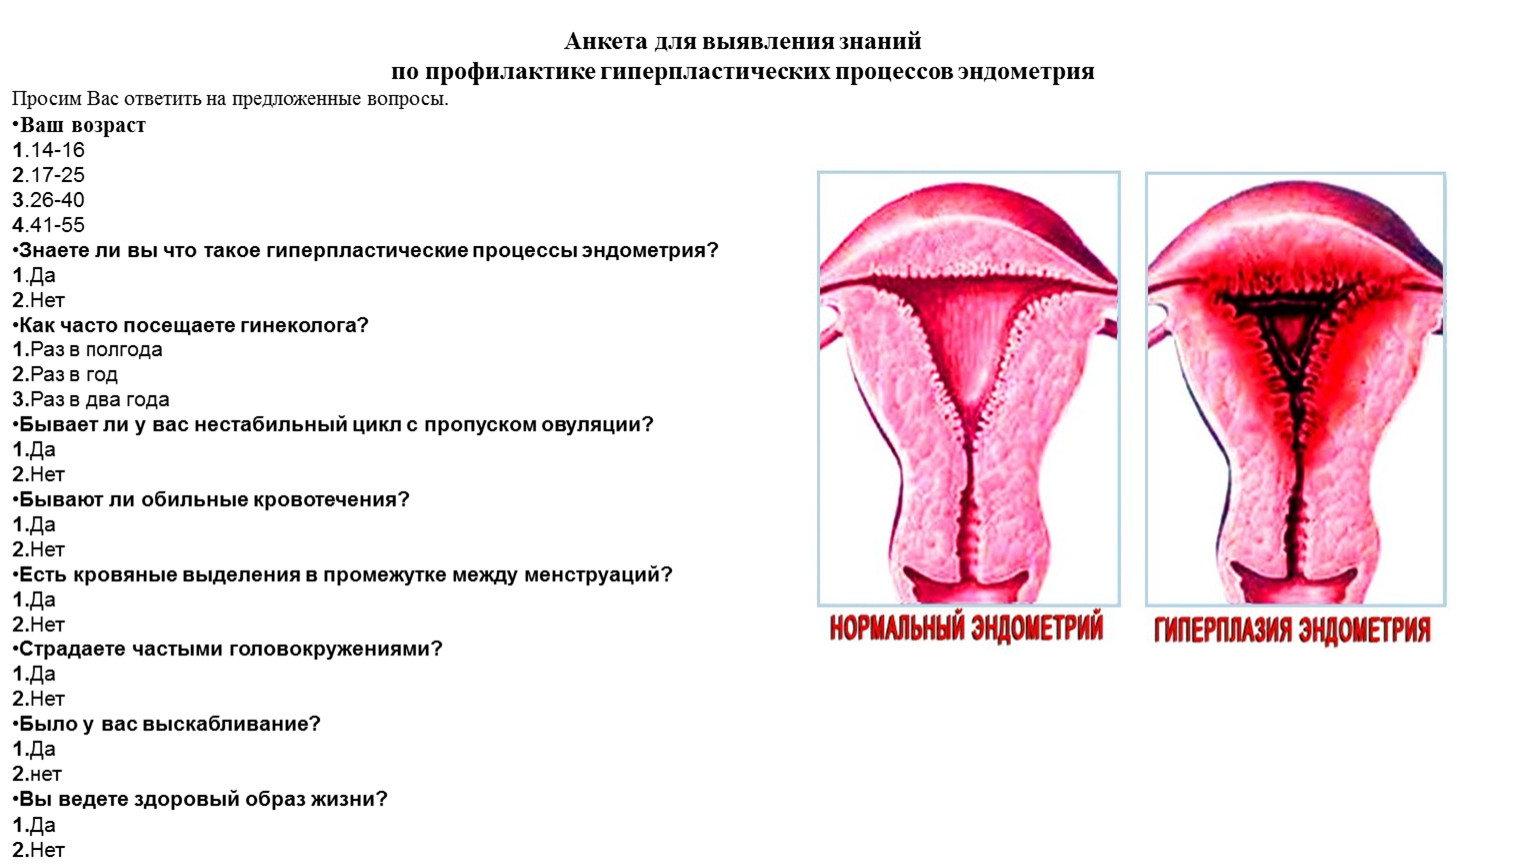 Эндометрий матки при менструации